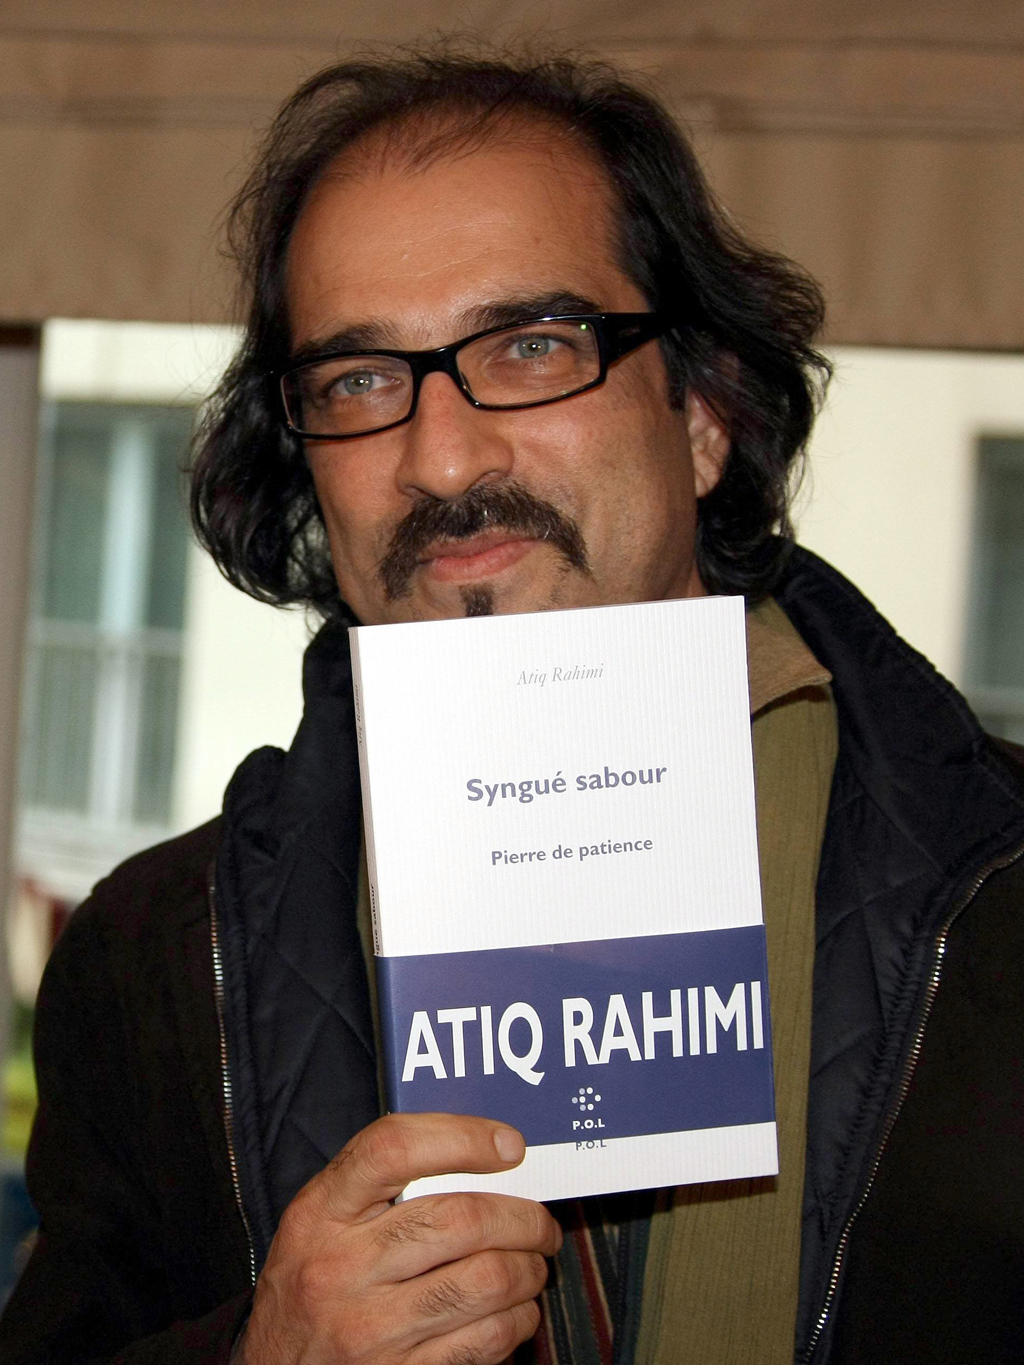 Atīq Raḥīmī präsentiert sein Buch "Stein der Geduld", für das er 2008 den Prix Goncourt erhielt; Foto: dpa/picture-alliance